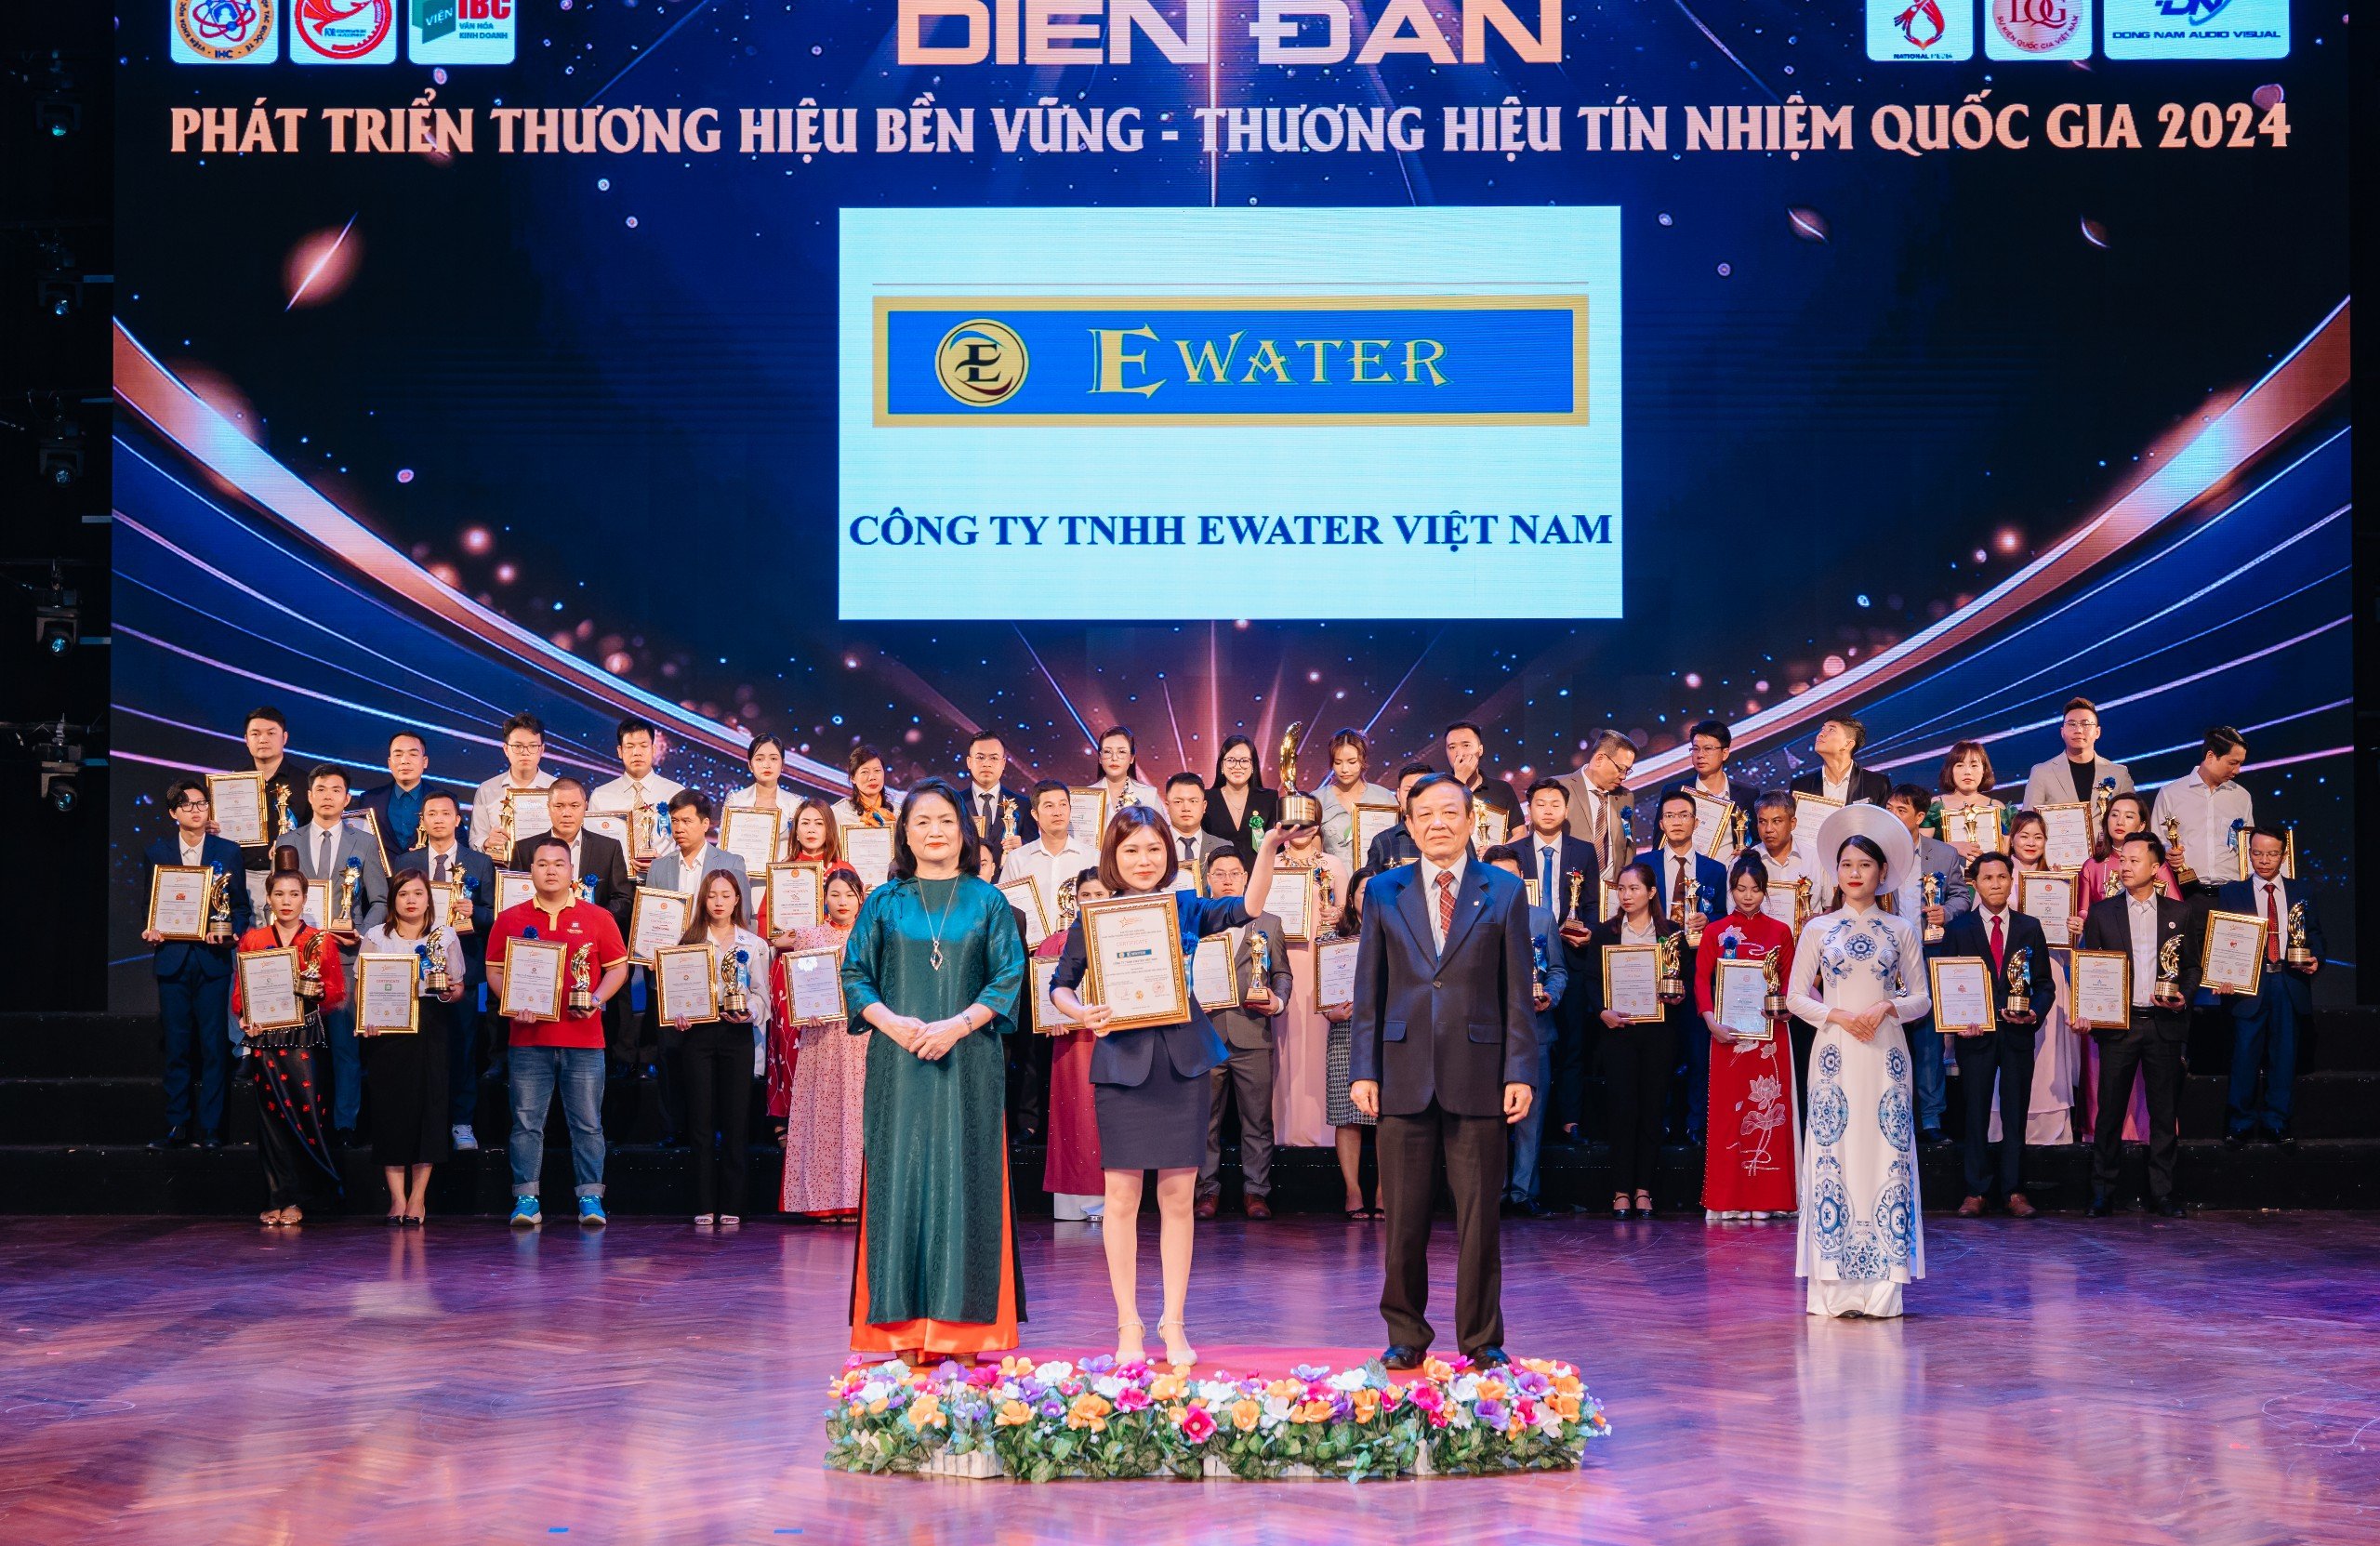 Ewater Việt Nam - Thương hiệu bền vững quốc gia